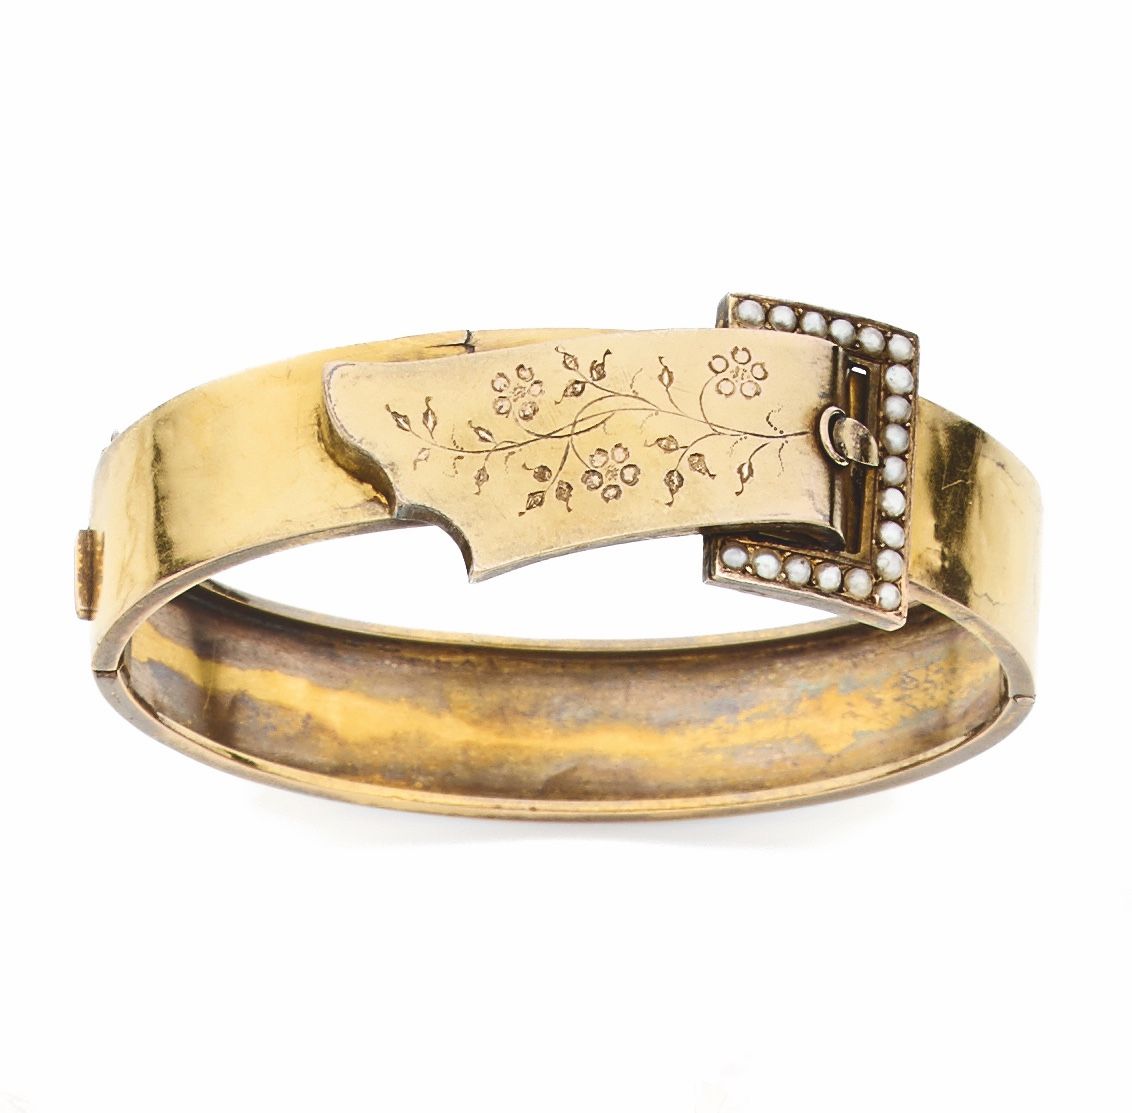 Null 黄金 "腰带 "手镯，花枝招展，模拟的扣子上镶嵌着珍珠。19世纪晚期作品 重量16克